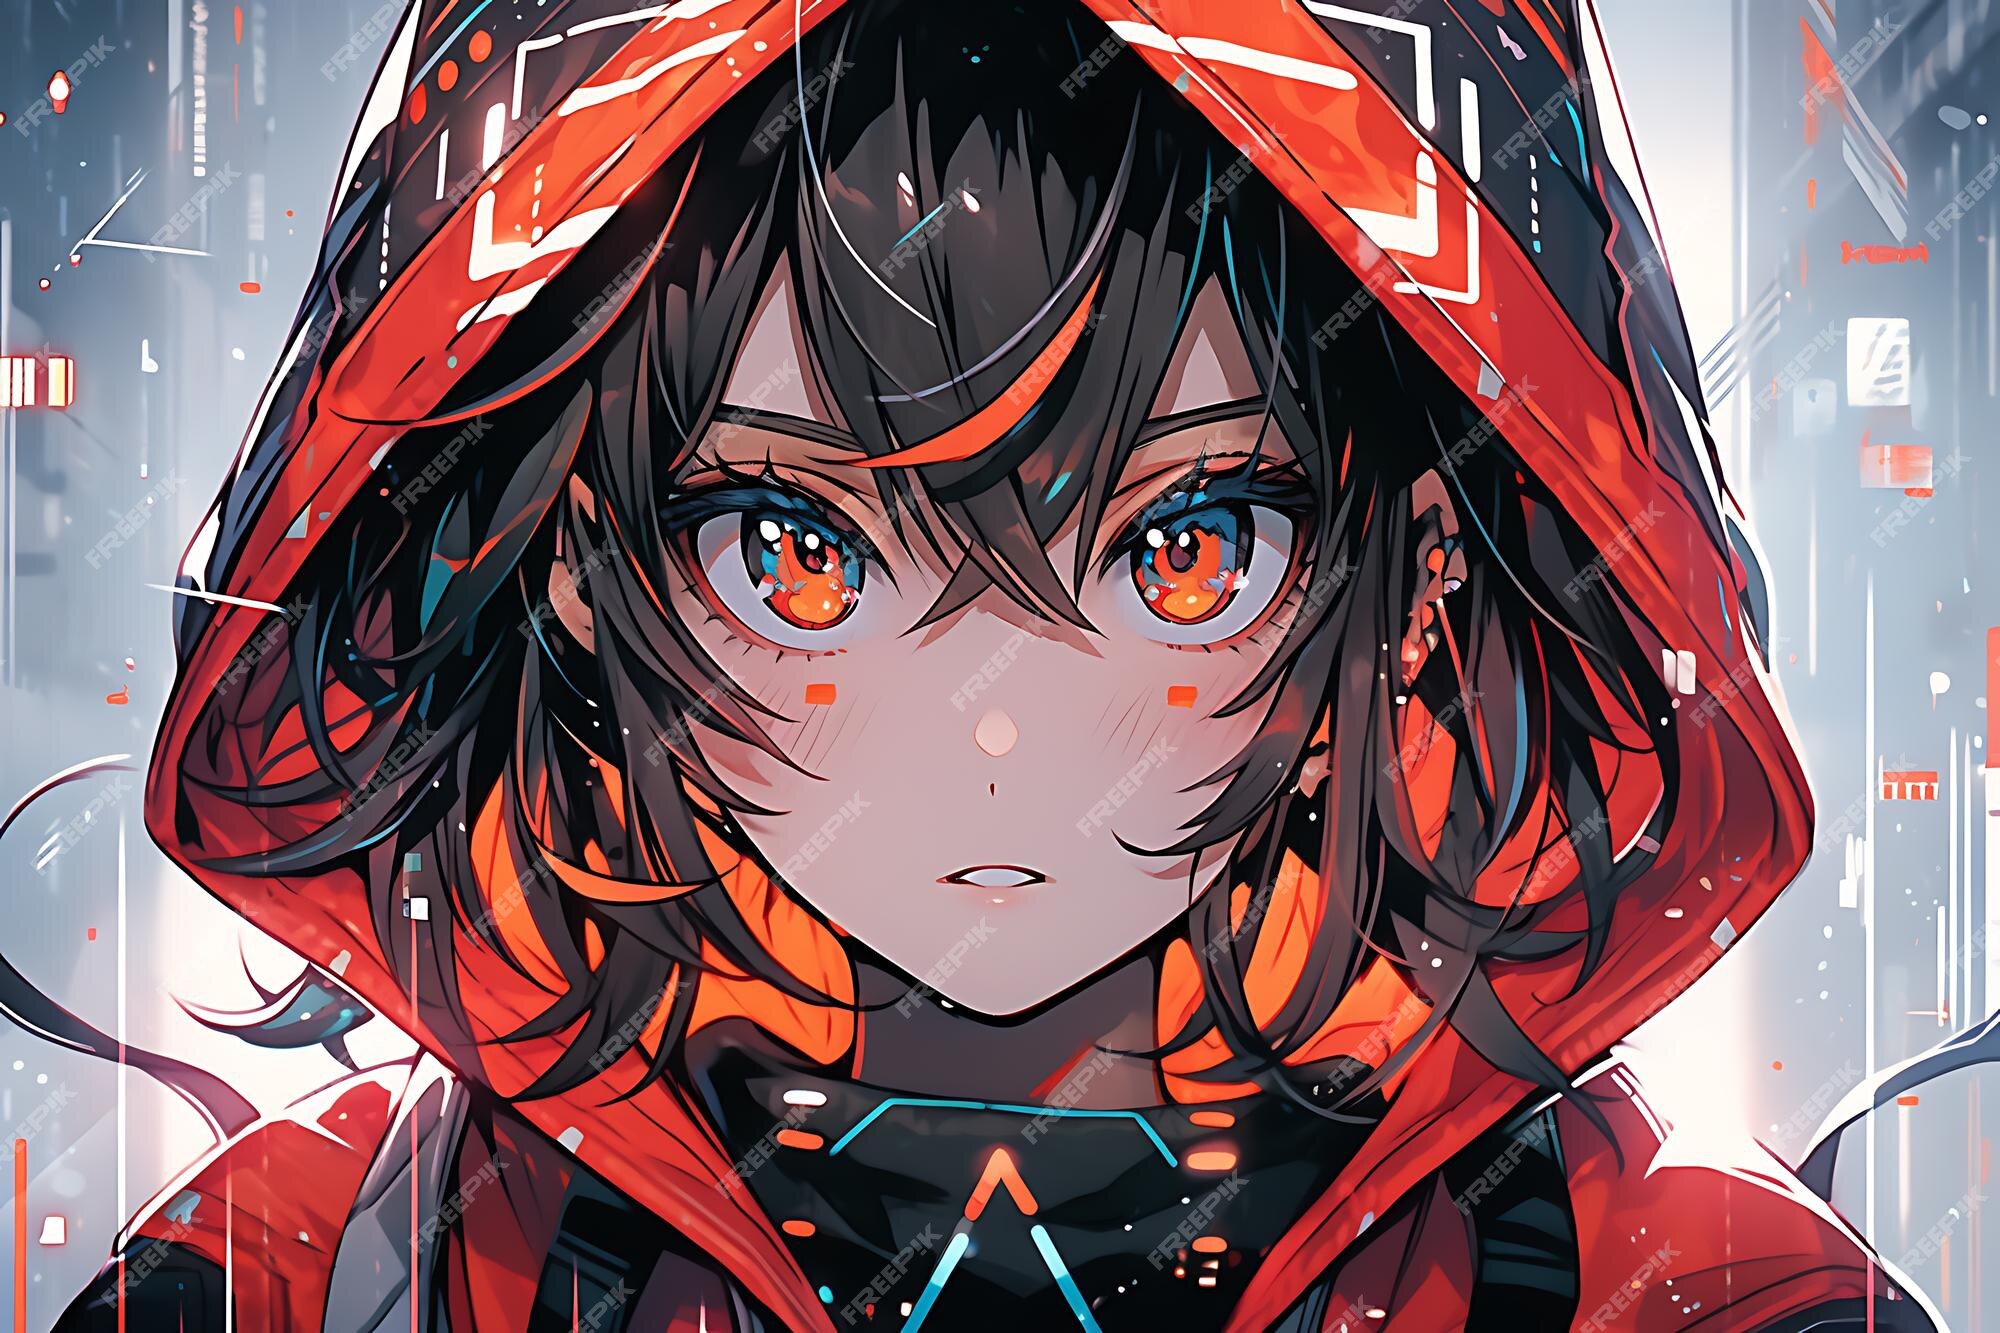 Olhos Anime Imagens – Download Grátis no Freepik